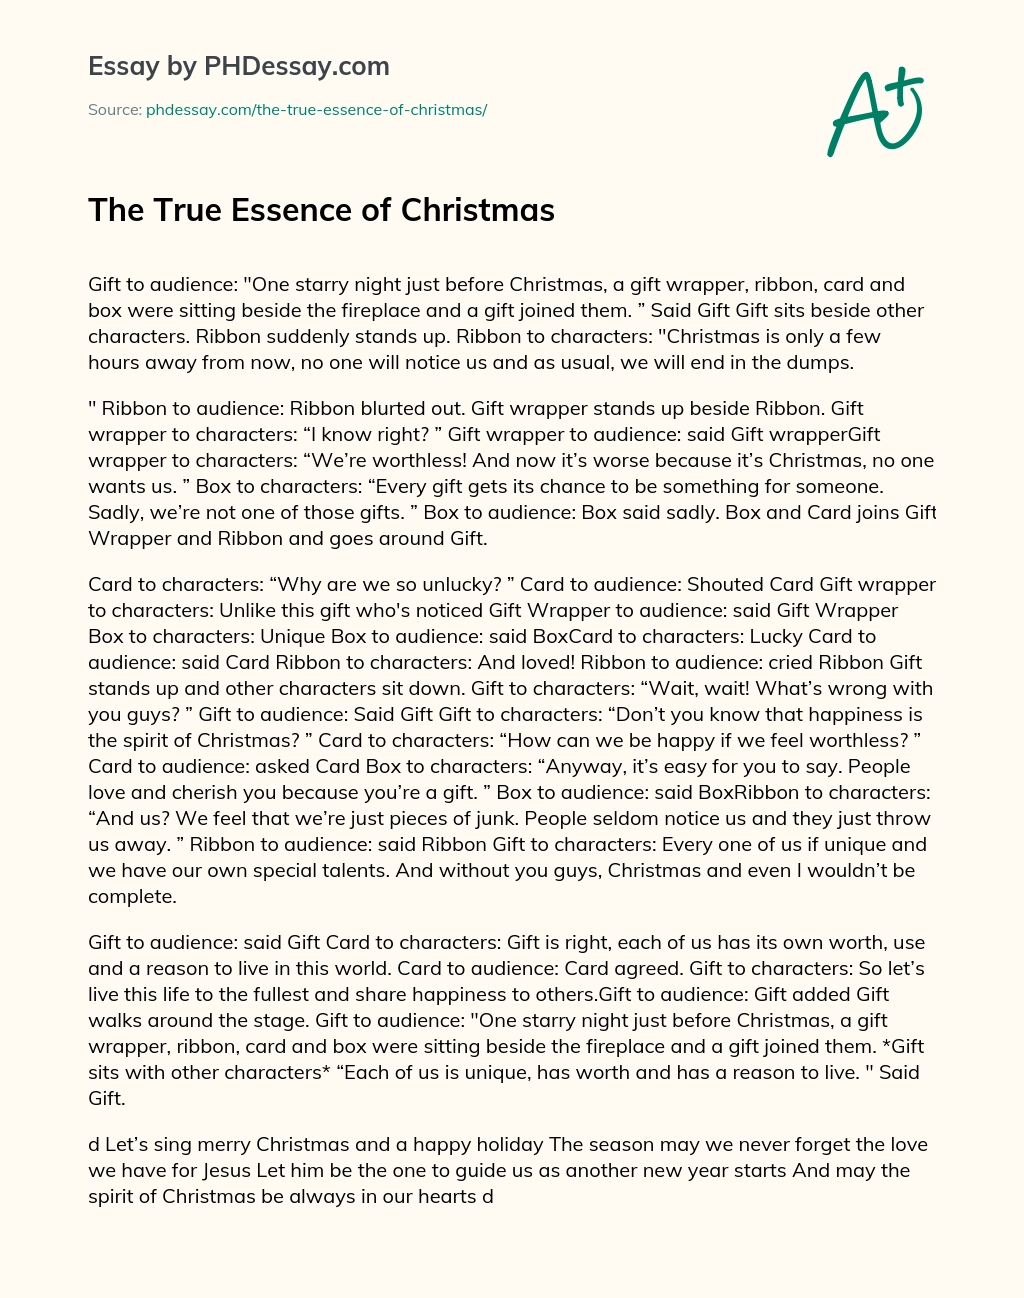 The True Essence of Christmas essay